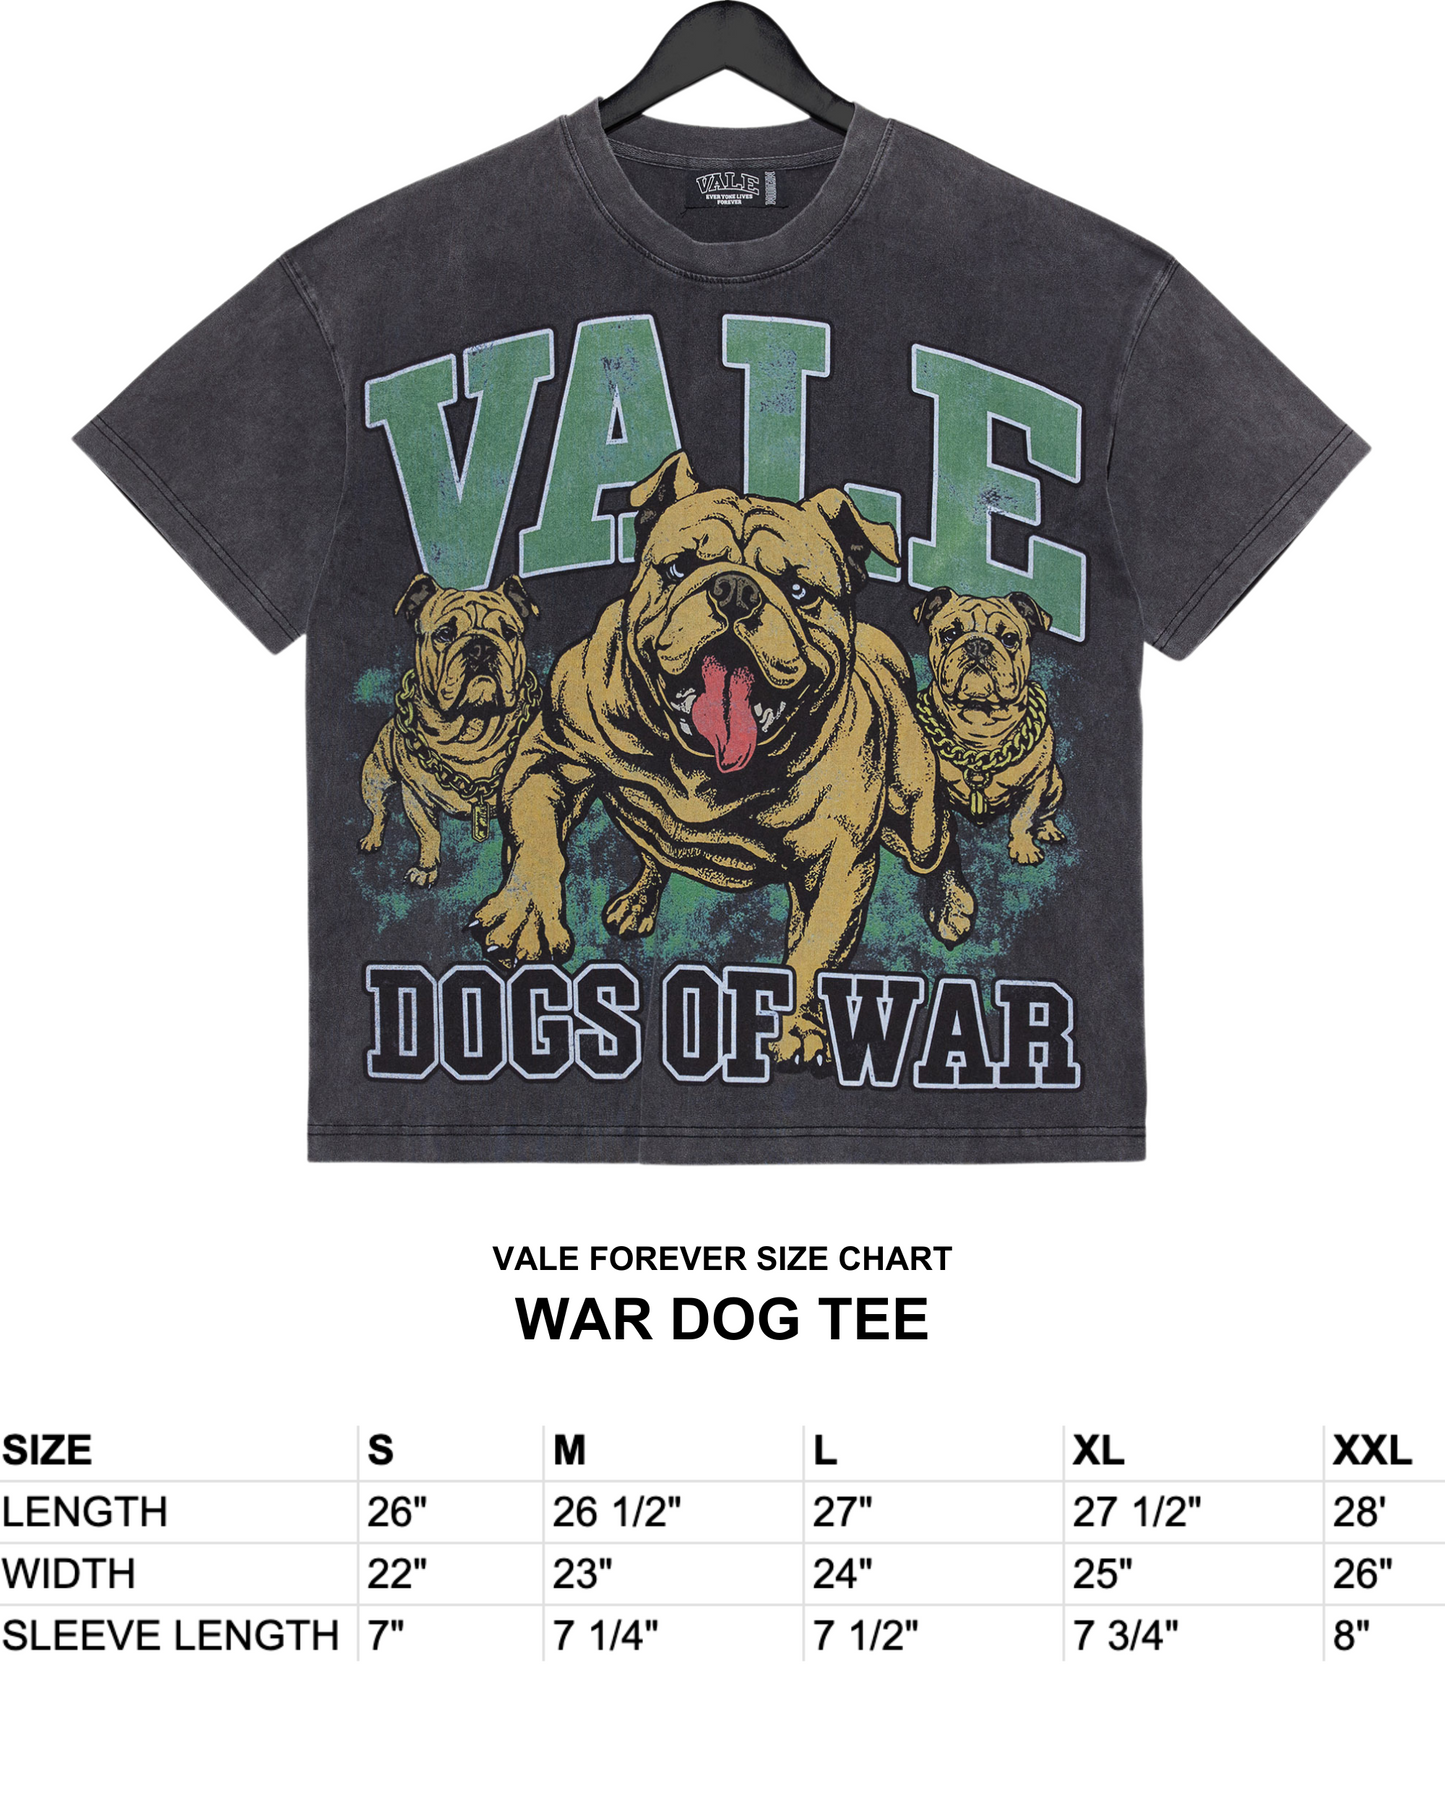 WAR DOG TEE